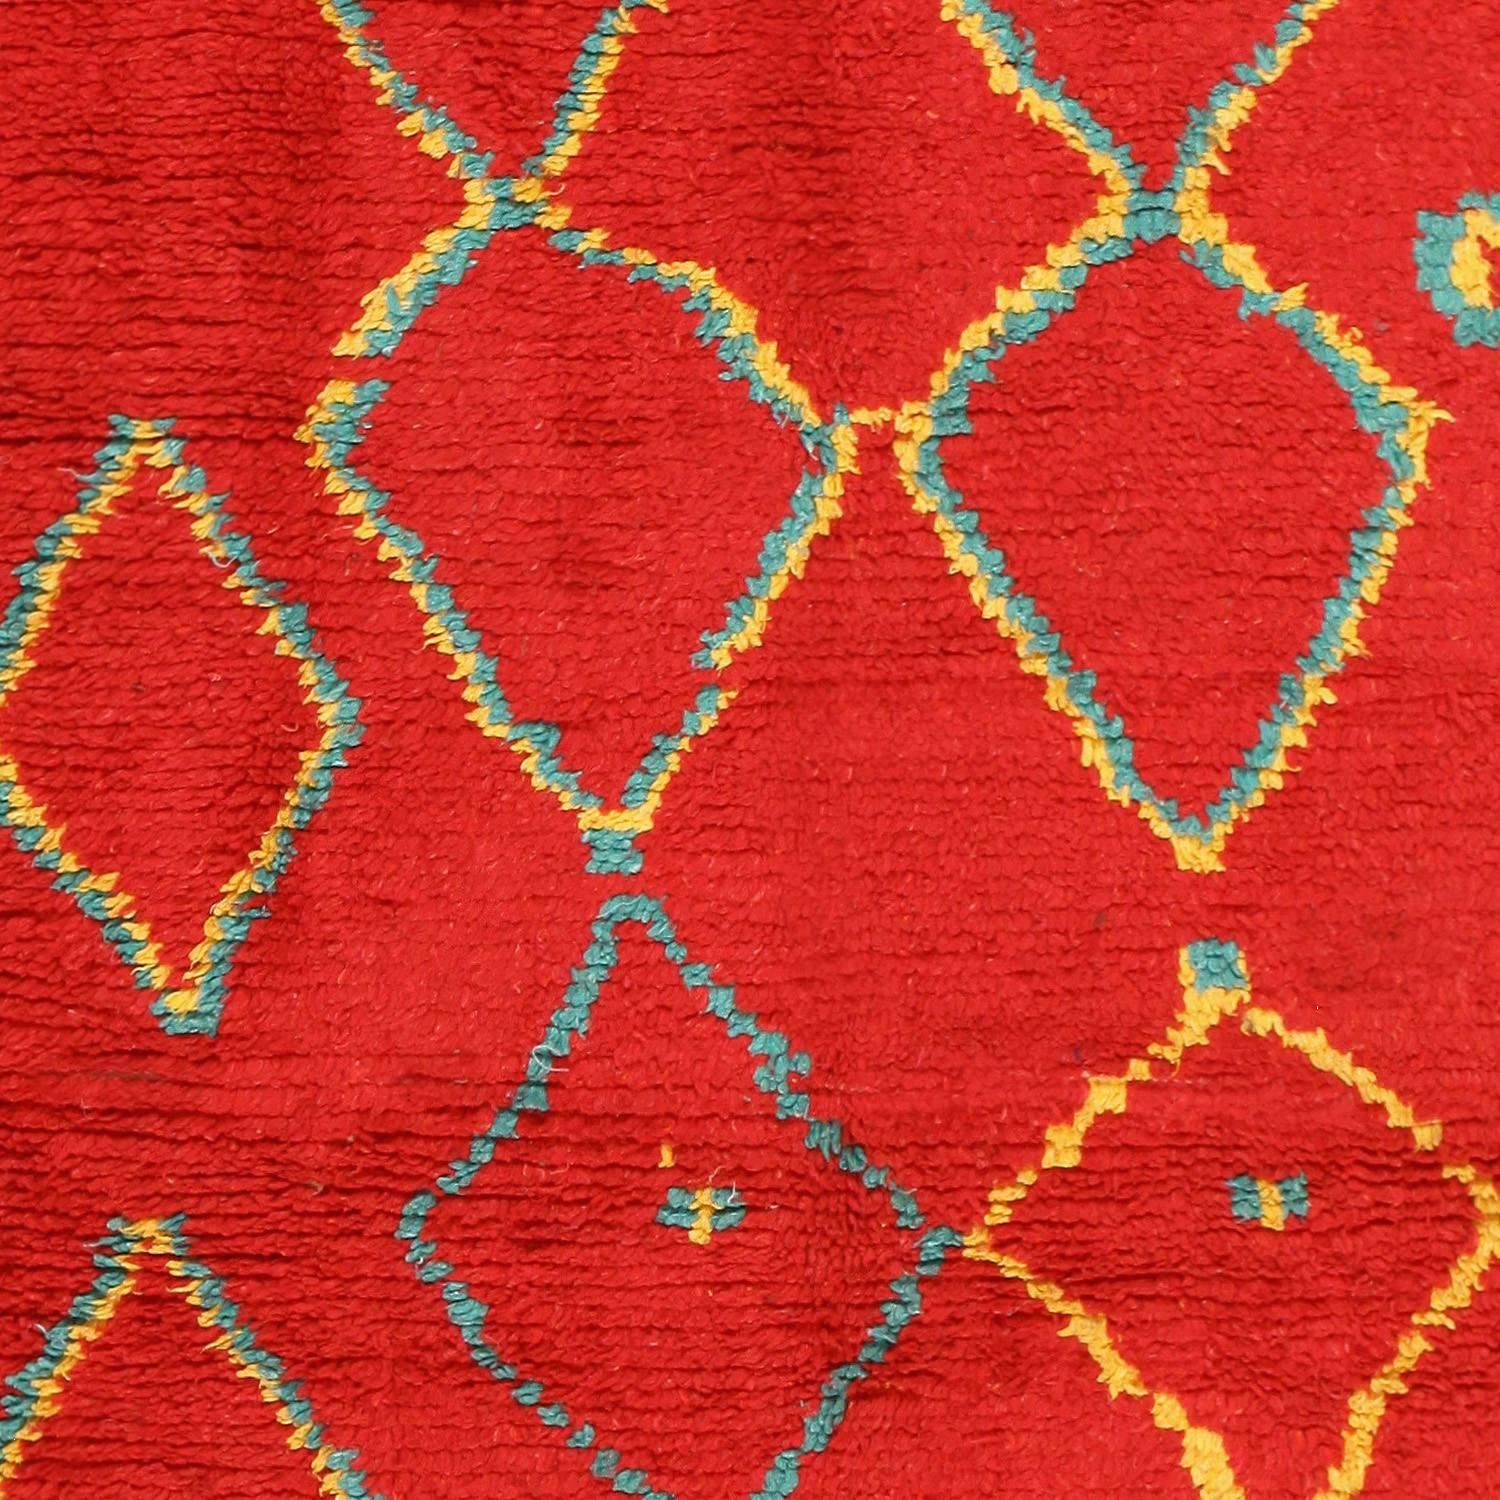 Folk Art Vintage Red Berber Moroccan Rug